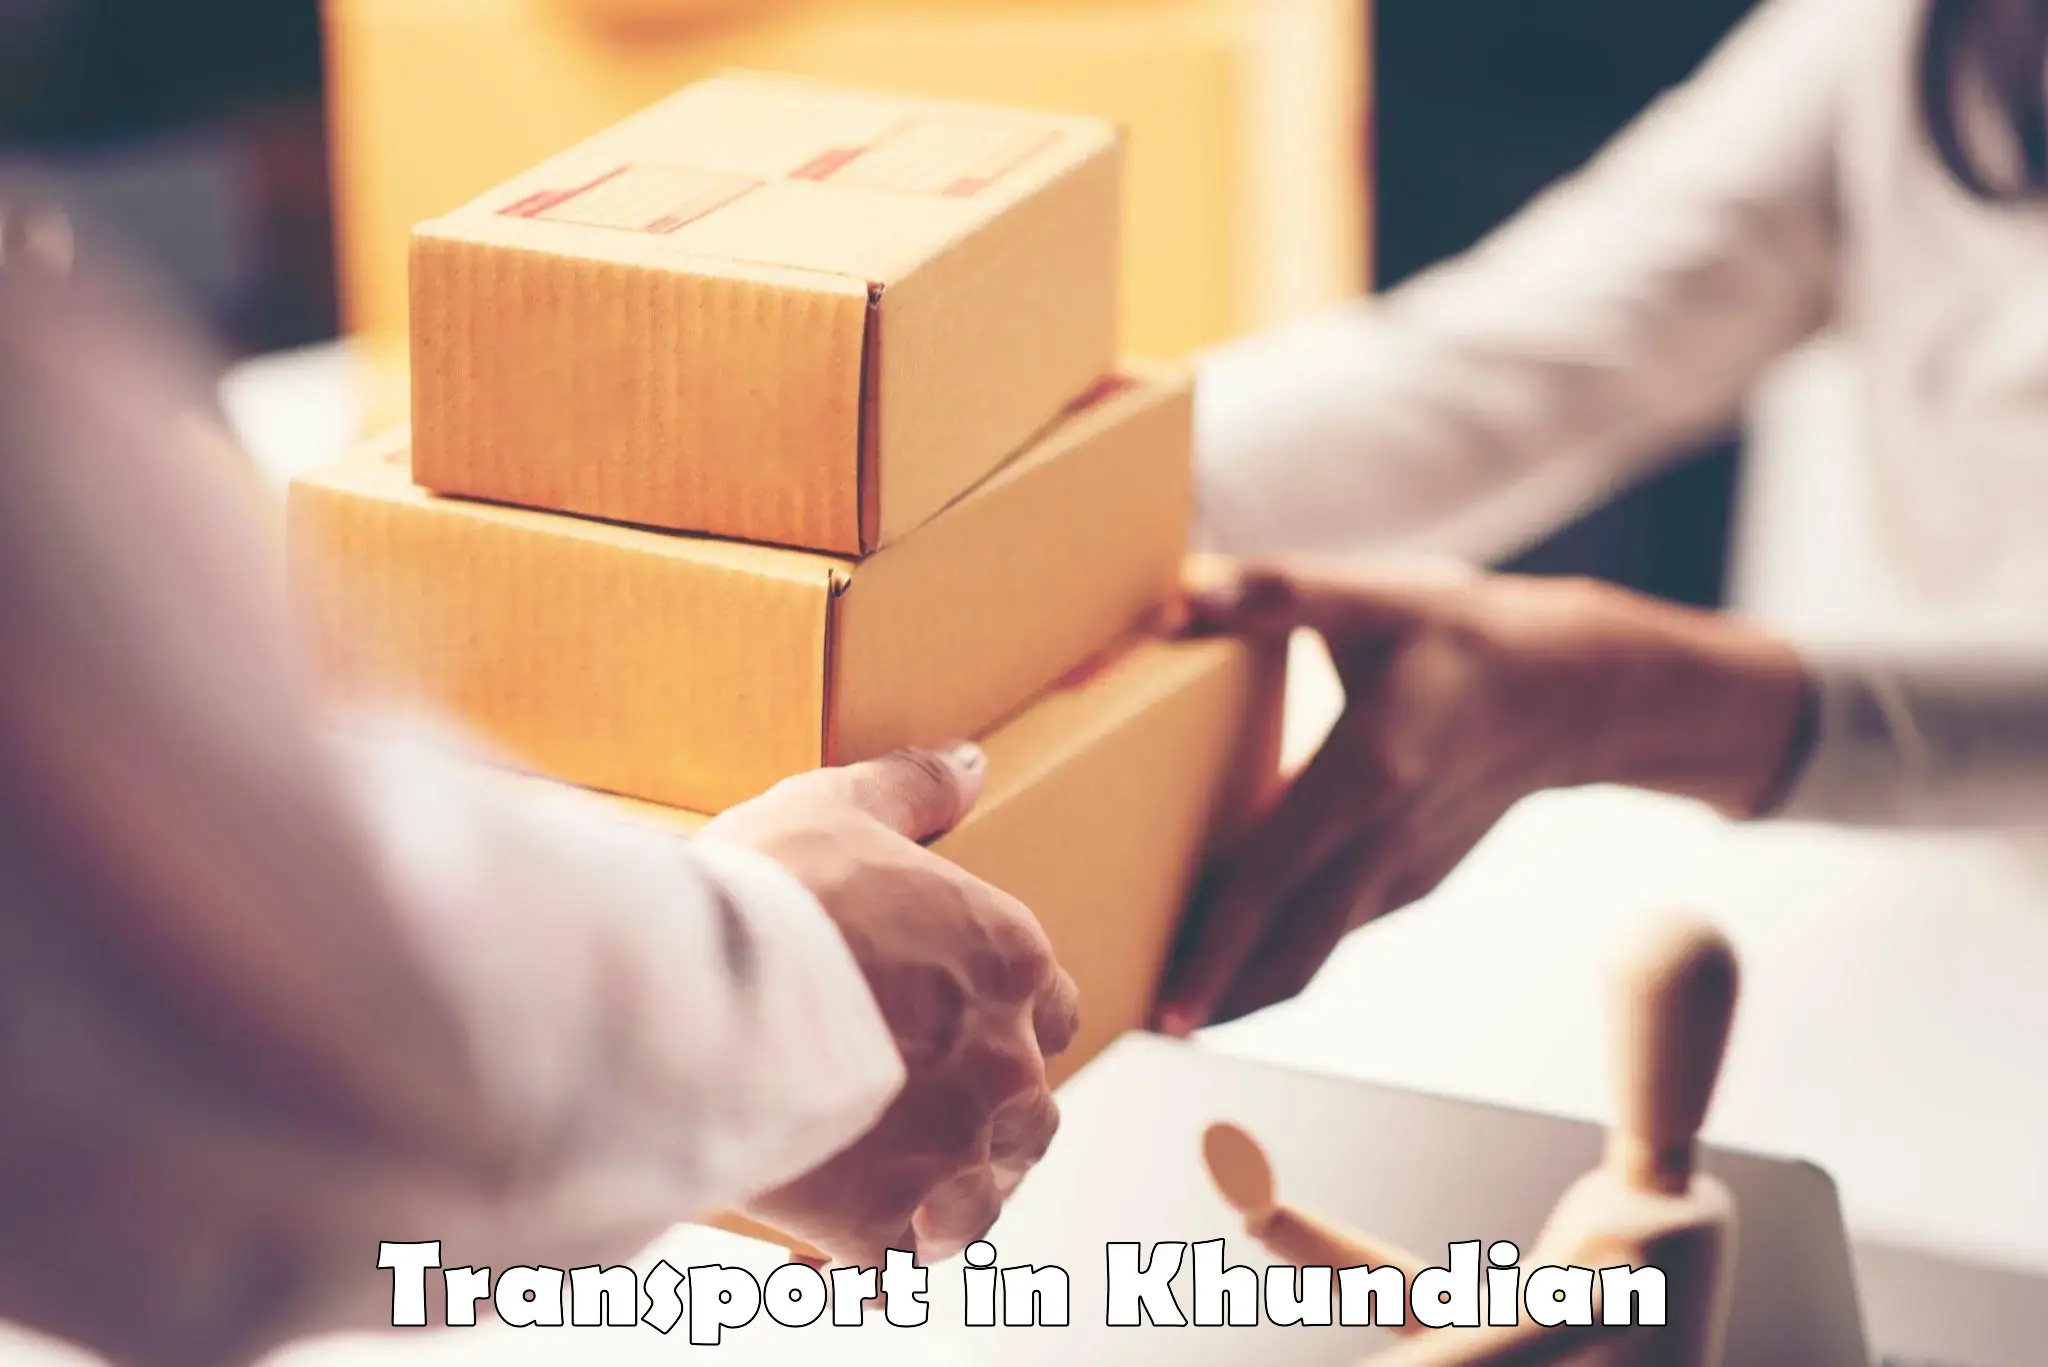 Intercity goods transport in Khundian